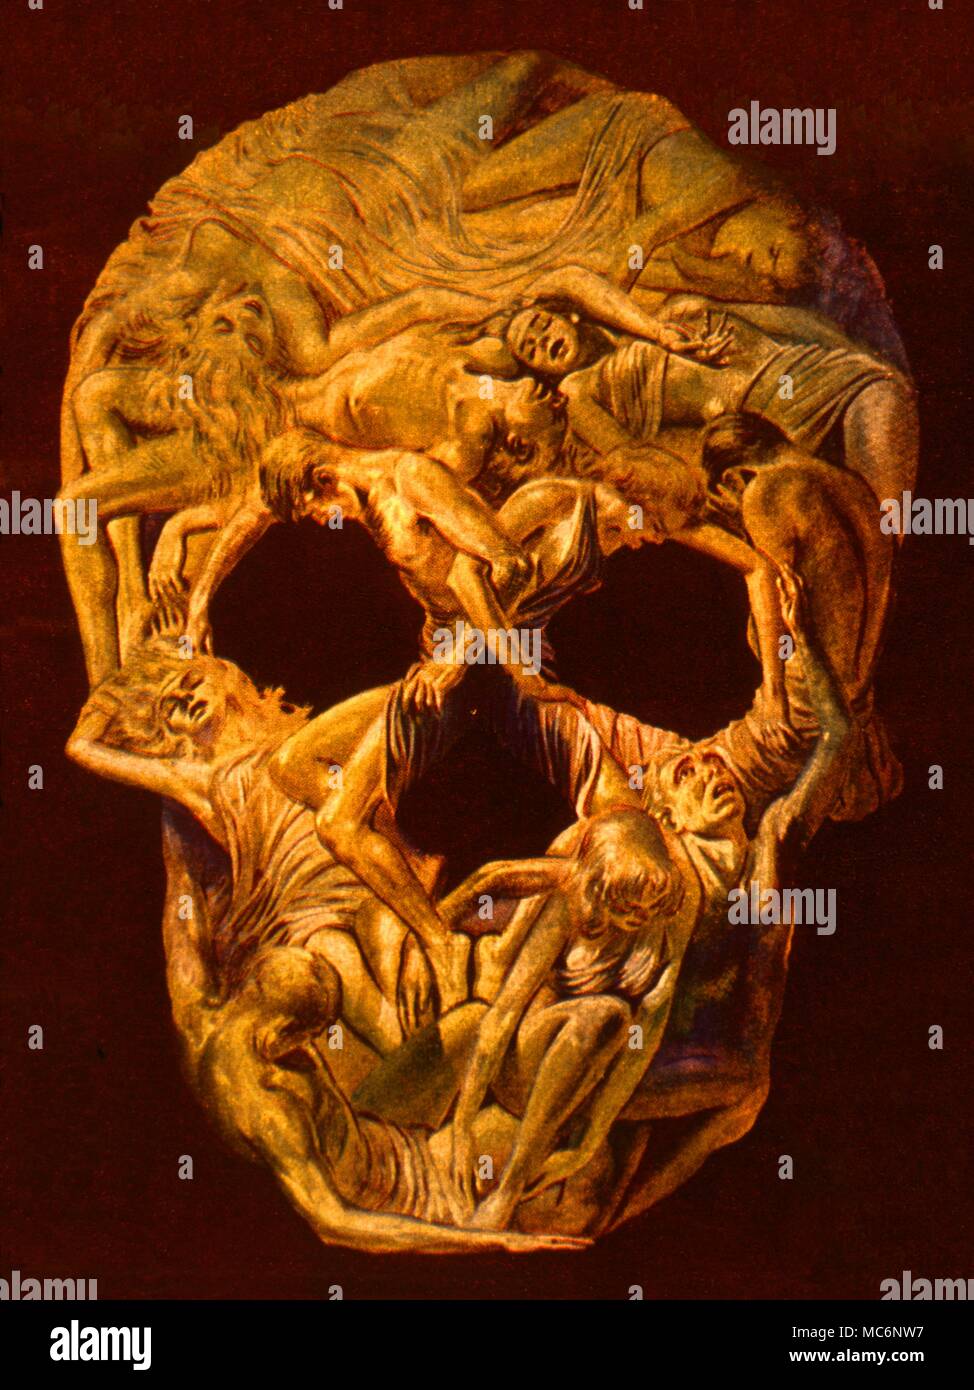 Cranio di forme umane, derivato dalla grafica di Virgil Finlay per la copertina di "Famoso racconti fantastici' agosto 1946. Foto Stock